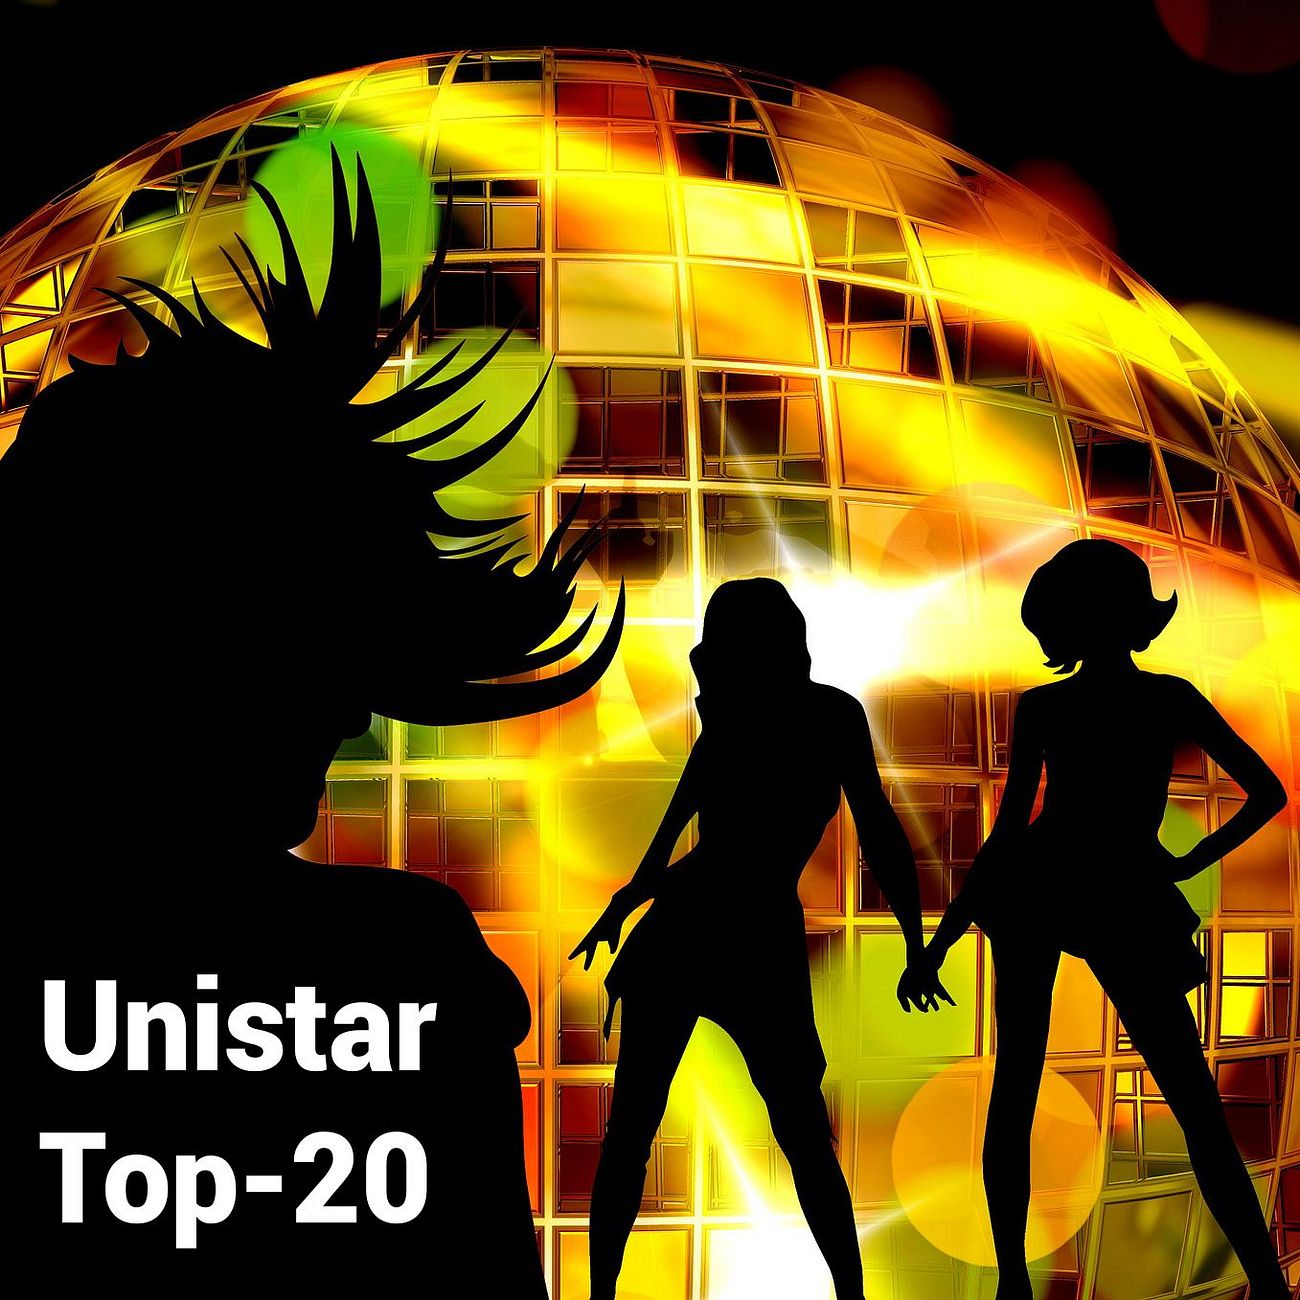 Unistar Top-20